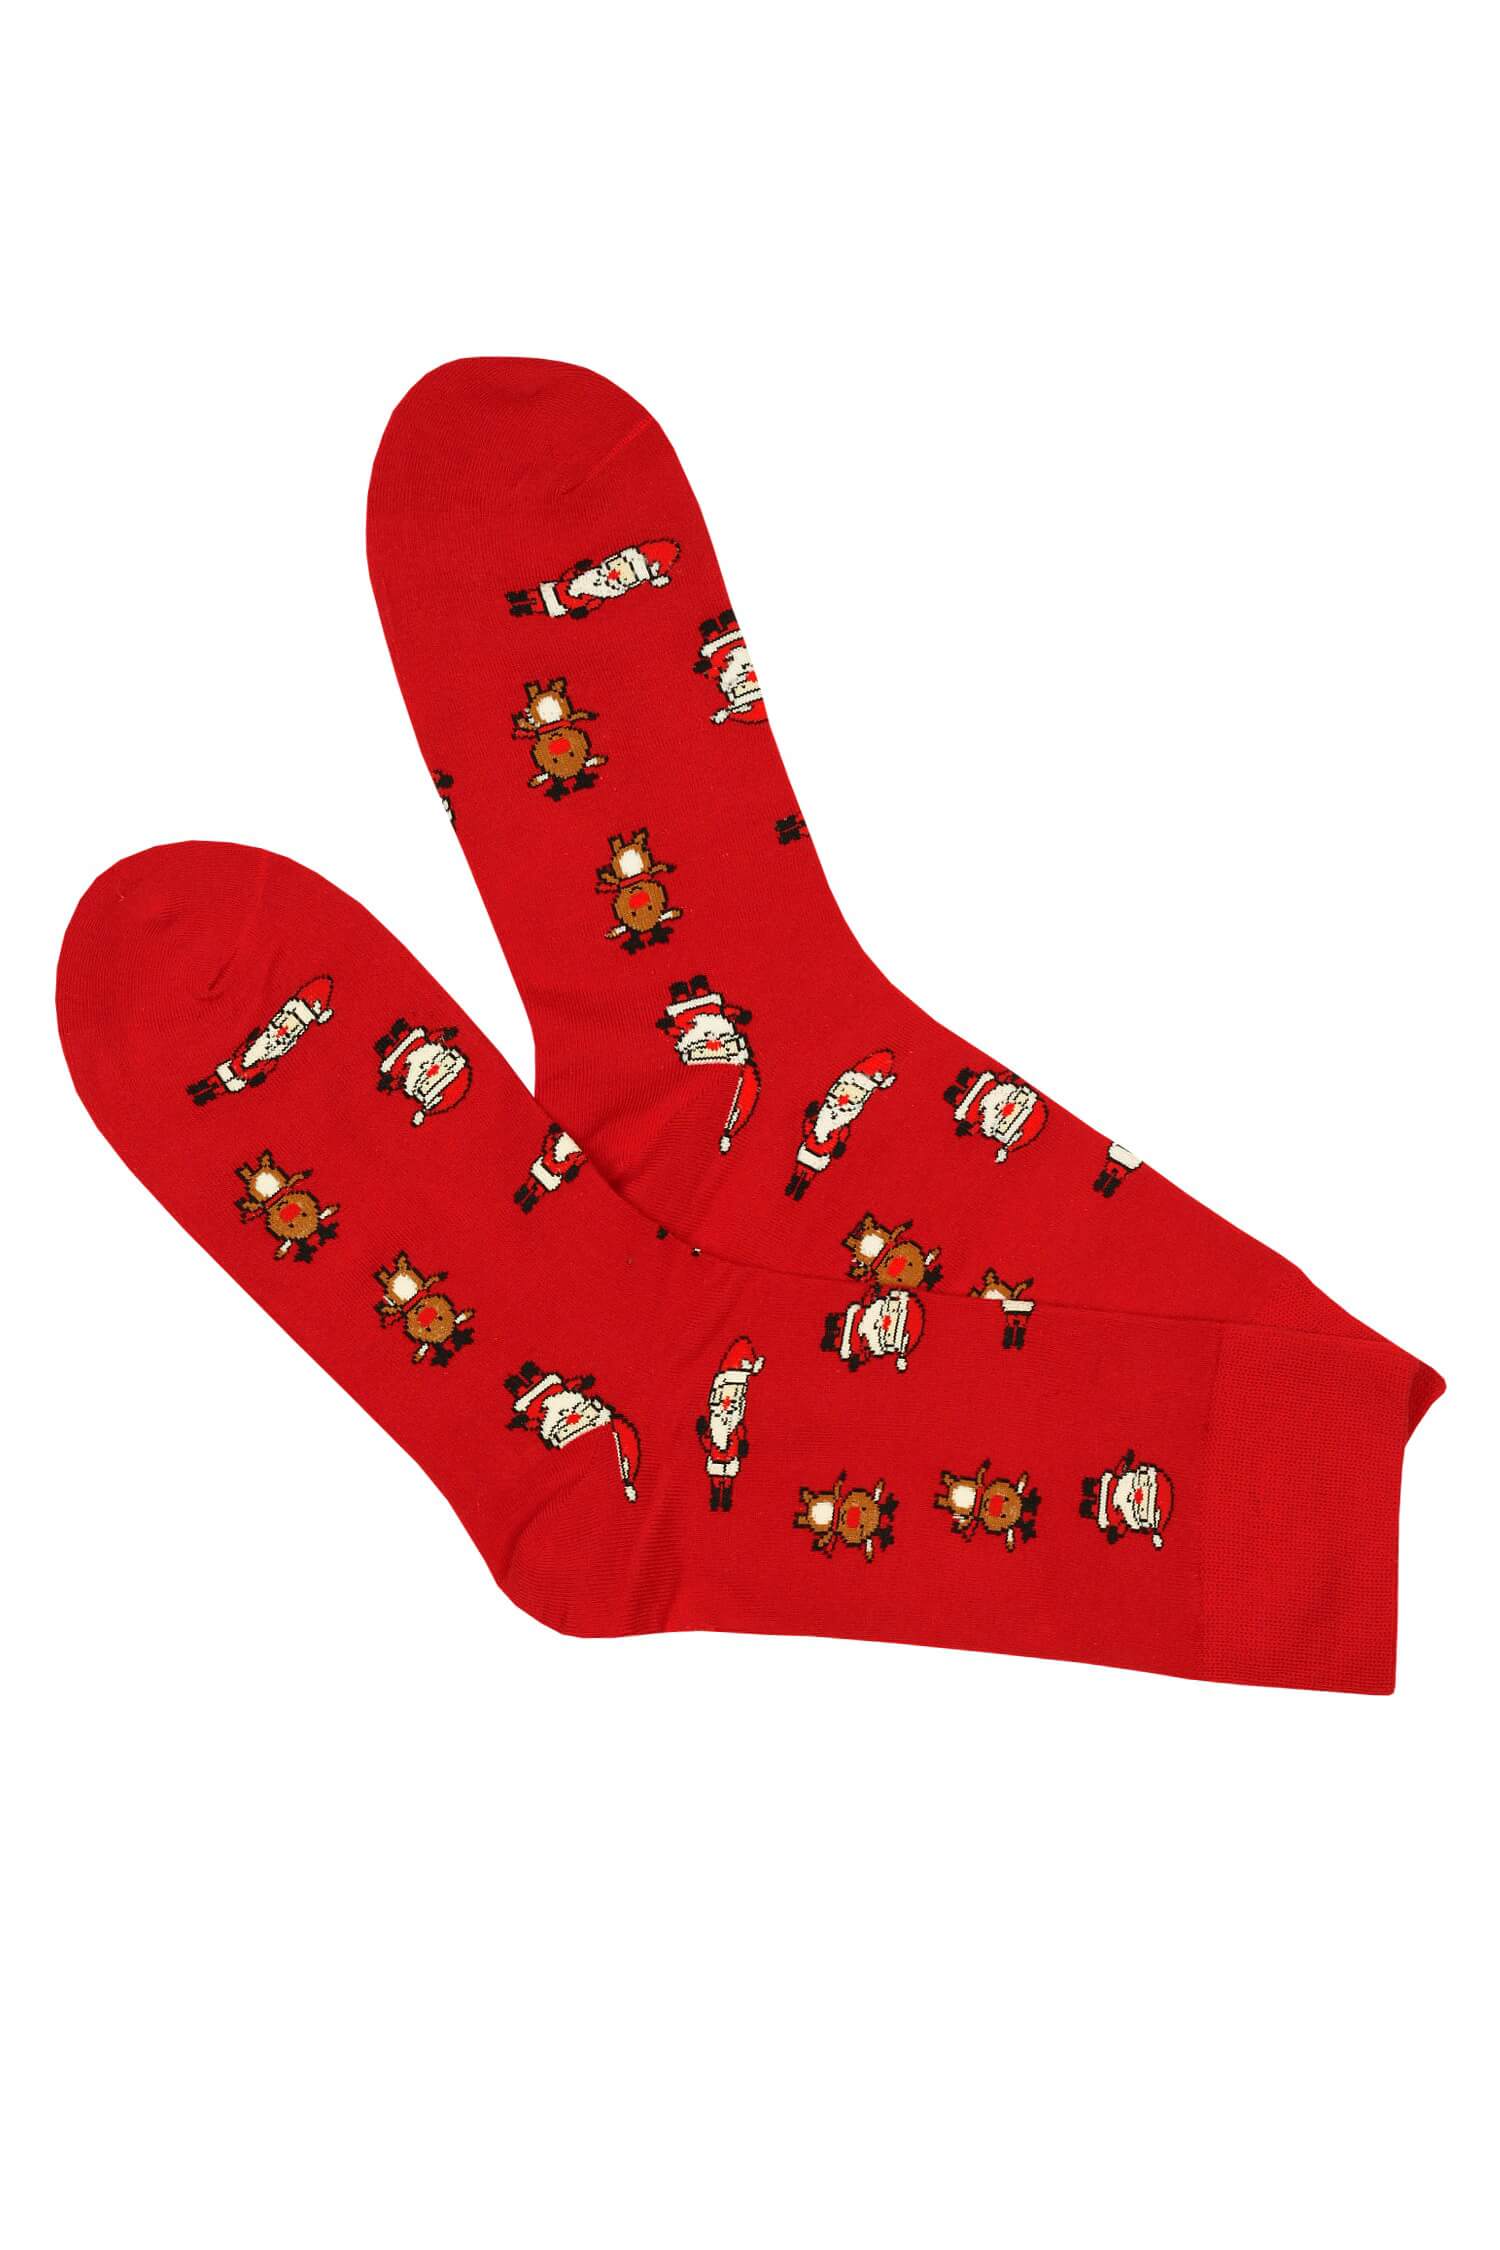 Pánské veselé ponožky AuraVia Vánoční 39-42 červená